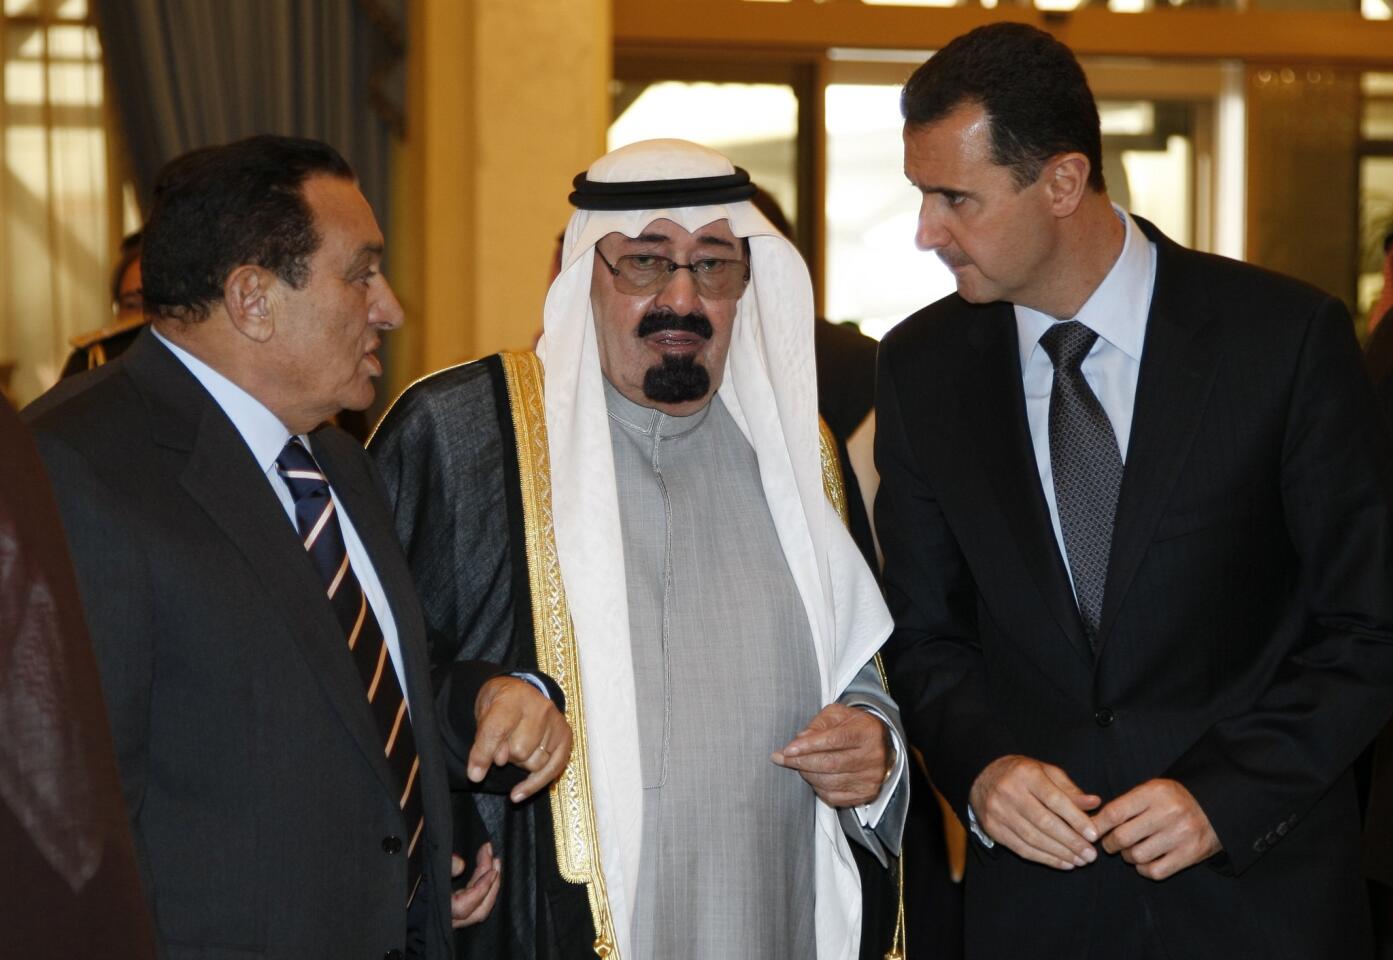 King Abdullah and regional leaders